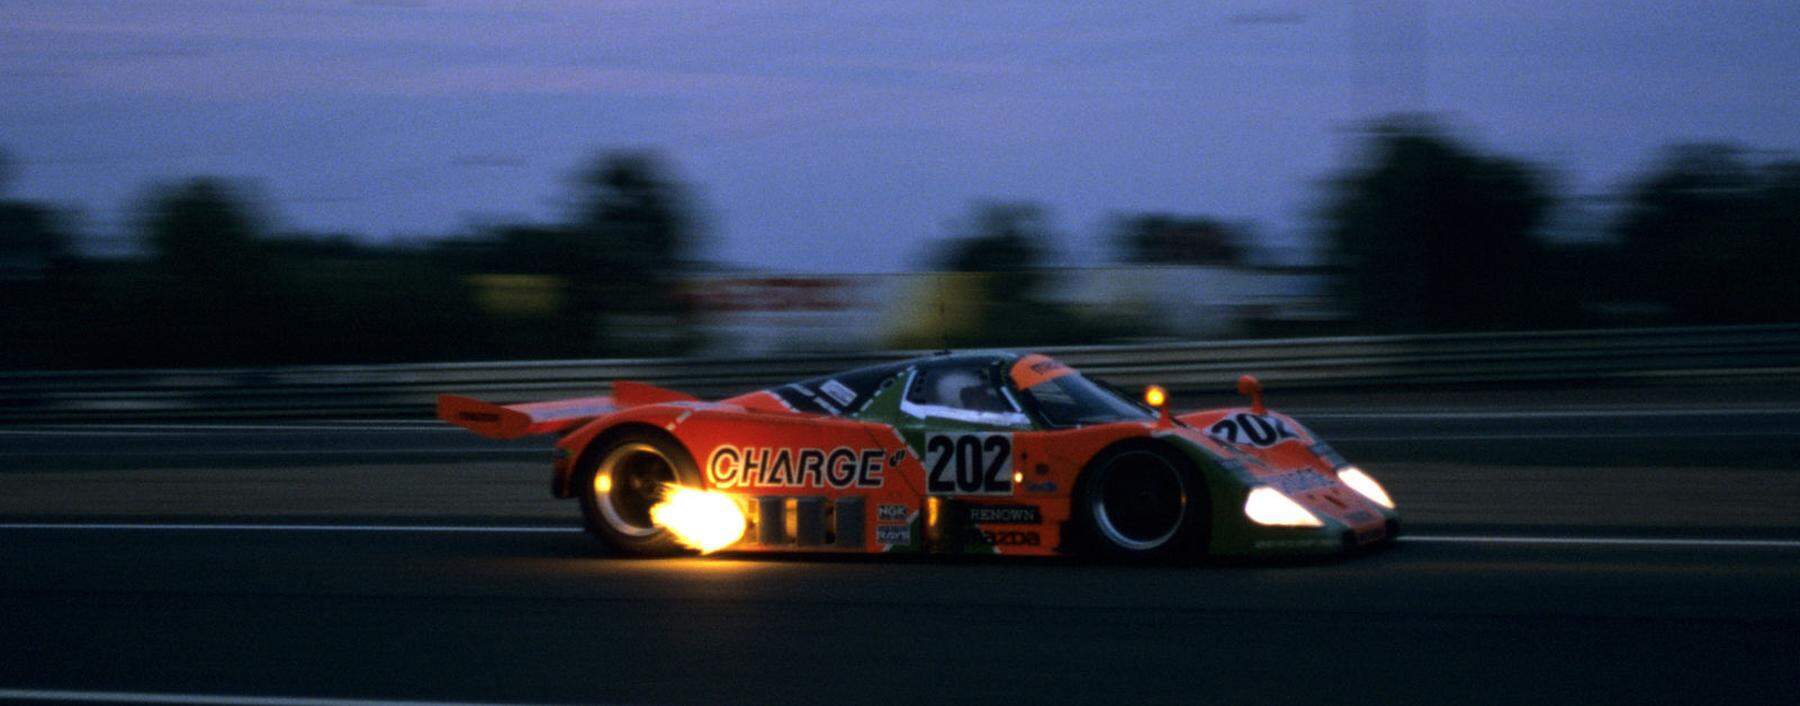 Durch die Nacht: Auspuff-Feuer des Mazda 787B auf seinem Weg zum Sieg der 24 Stunden von Le Mans 1991. Bis dato der größte Rennsport-Erfolg eines Autos mit  Wankelmotor.